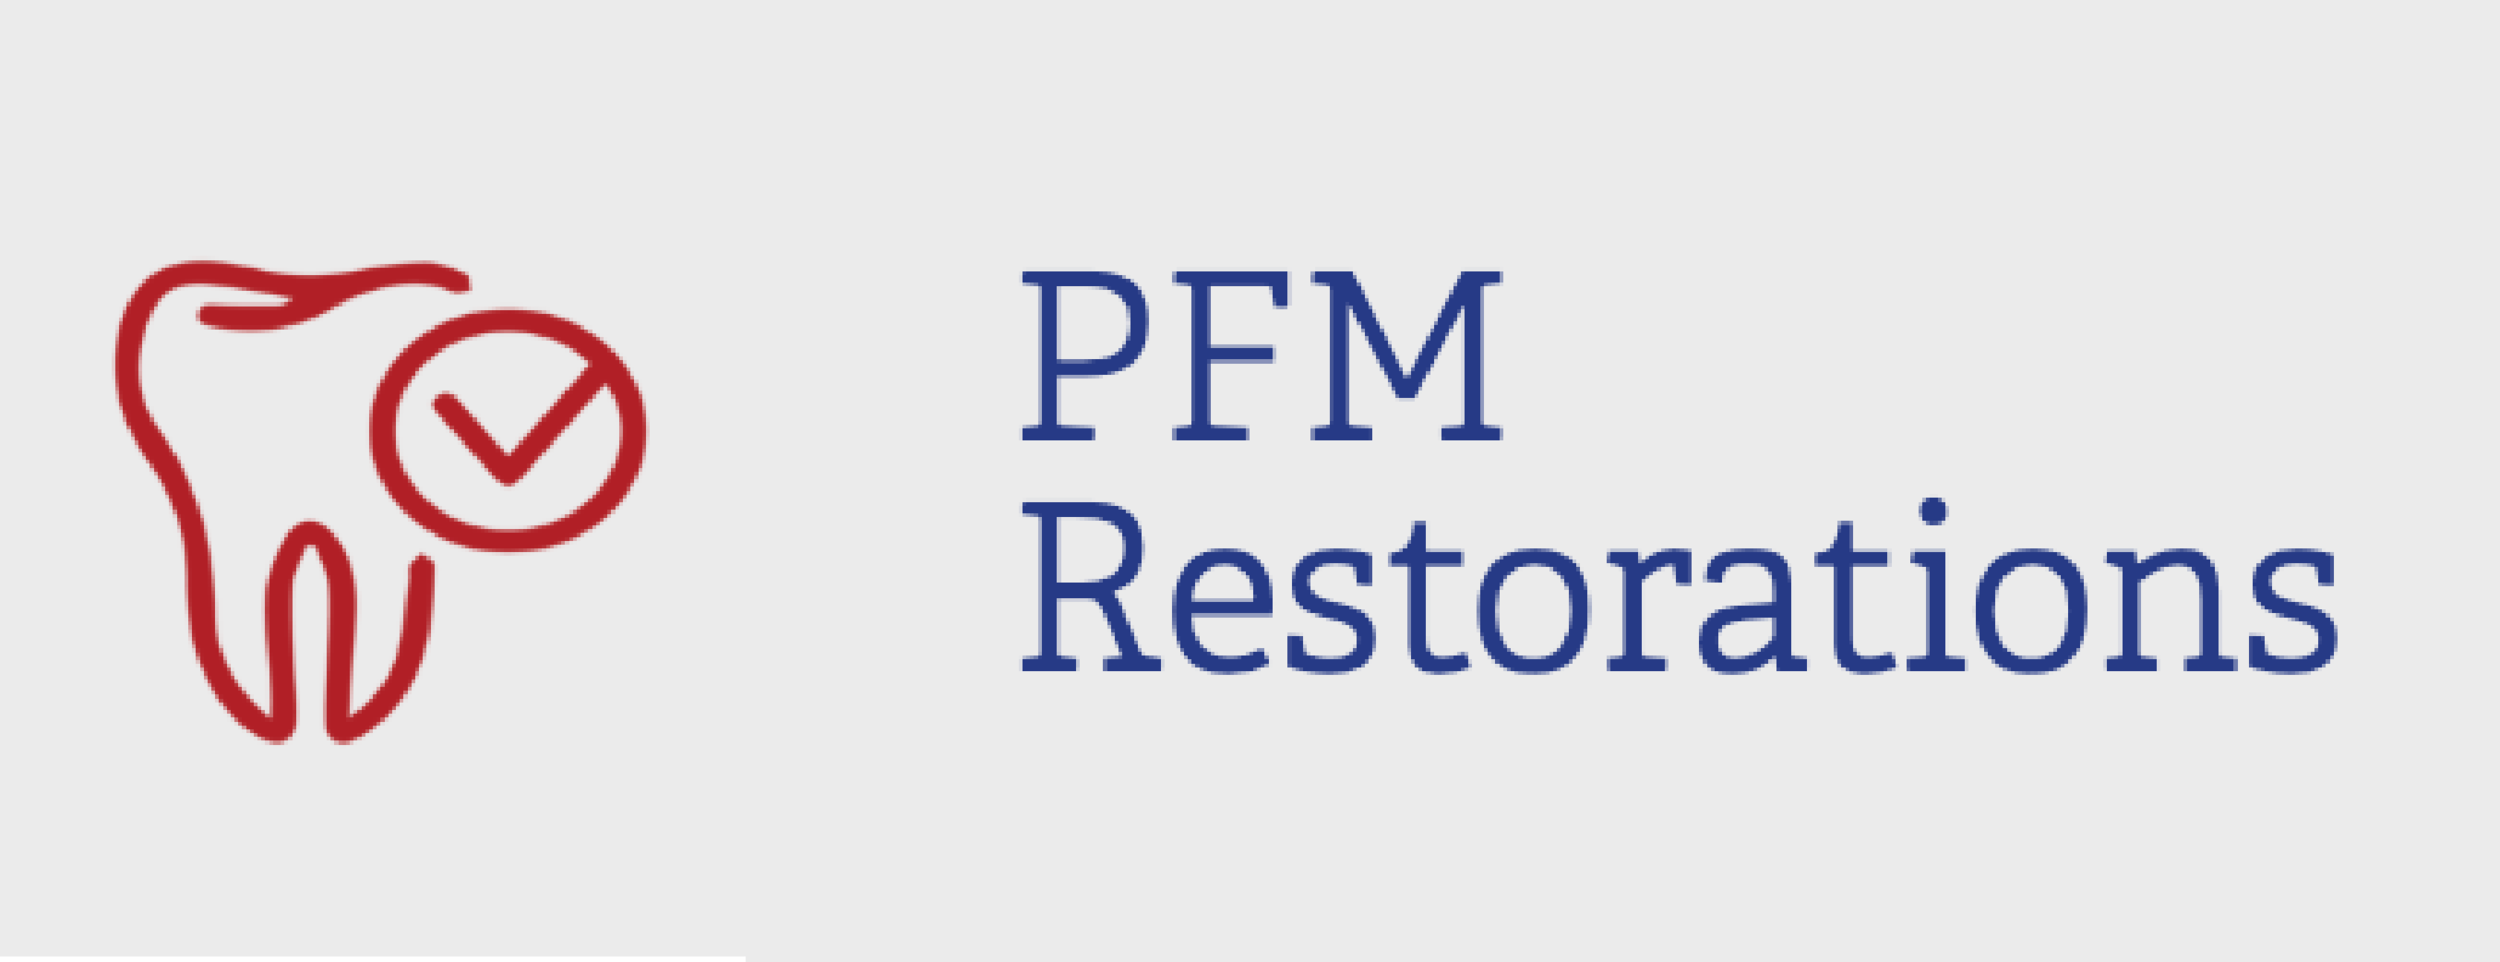 SERVICES_PFM restorations.png